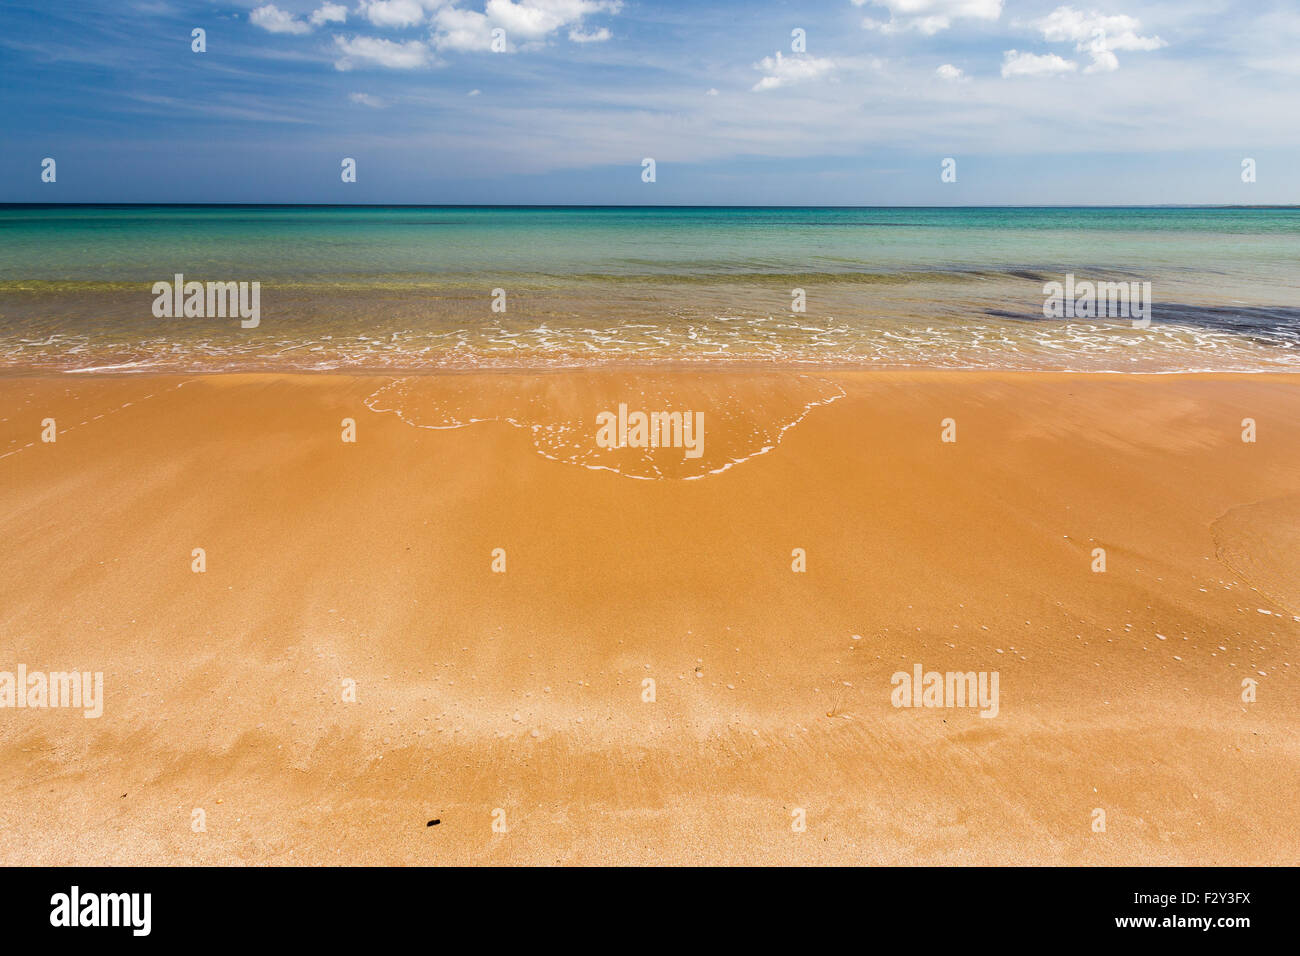 Beach of Lido di Noto, Sicily's sea. Spiaggia Lido di Noto, Sicilia. Stock Photo